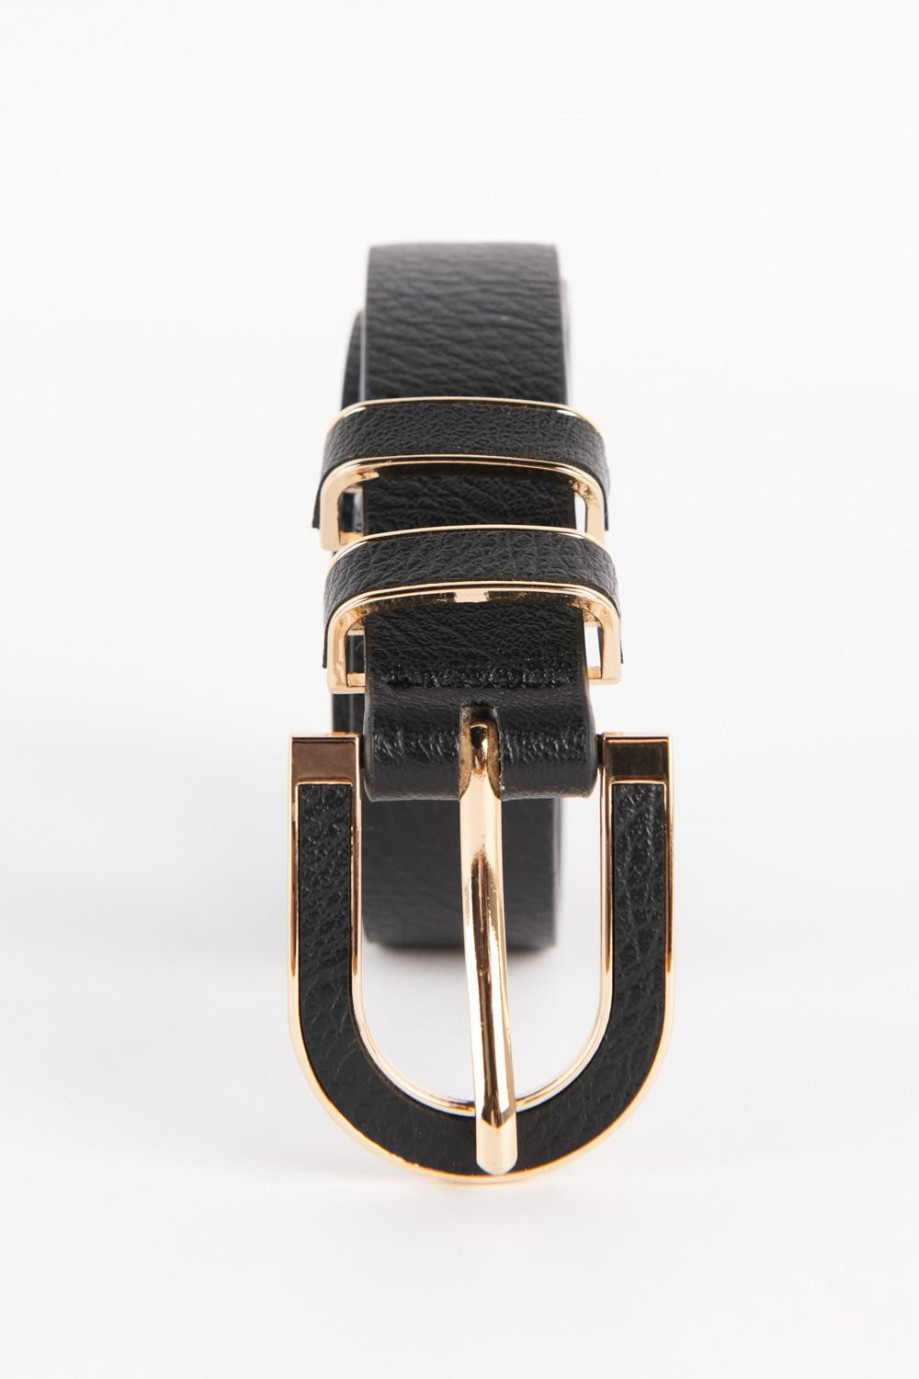 Cinturón sintético negro con hebilla y pasadores metálicos